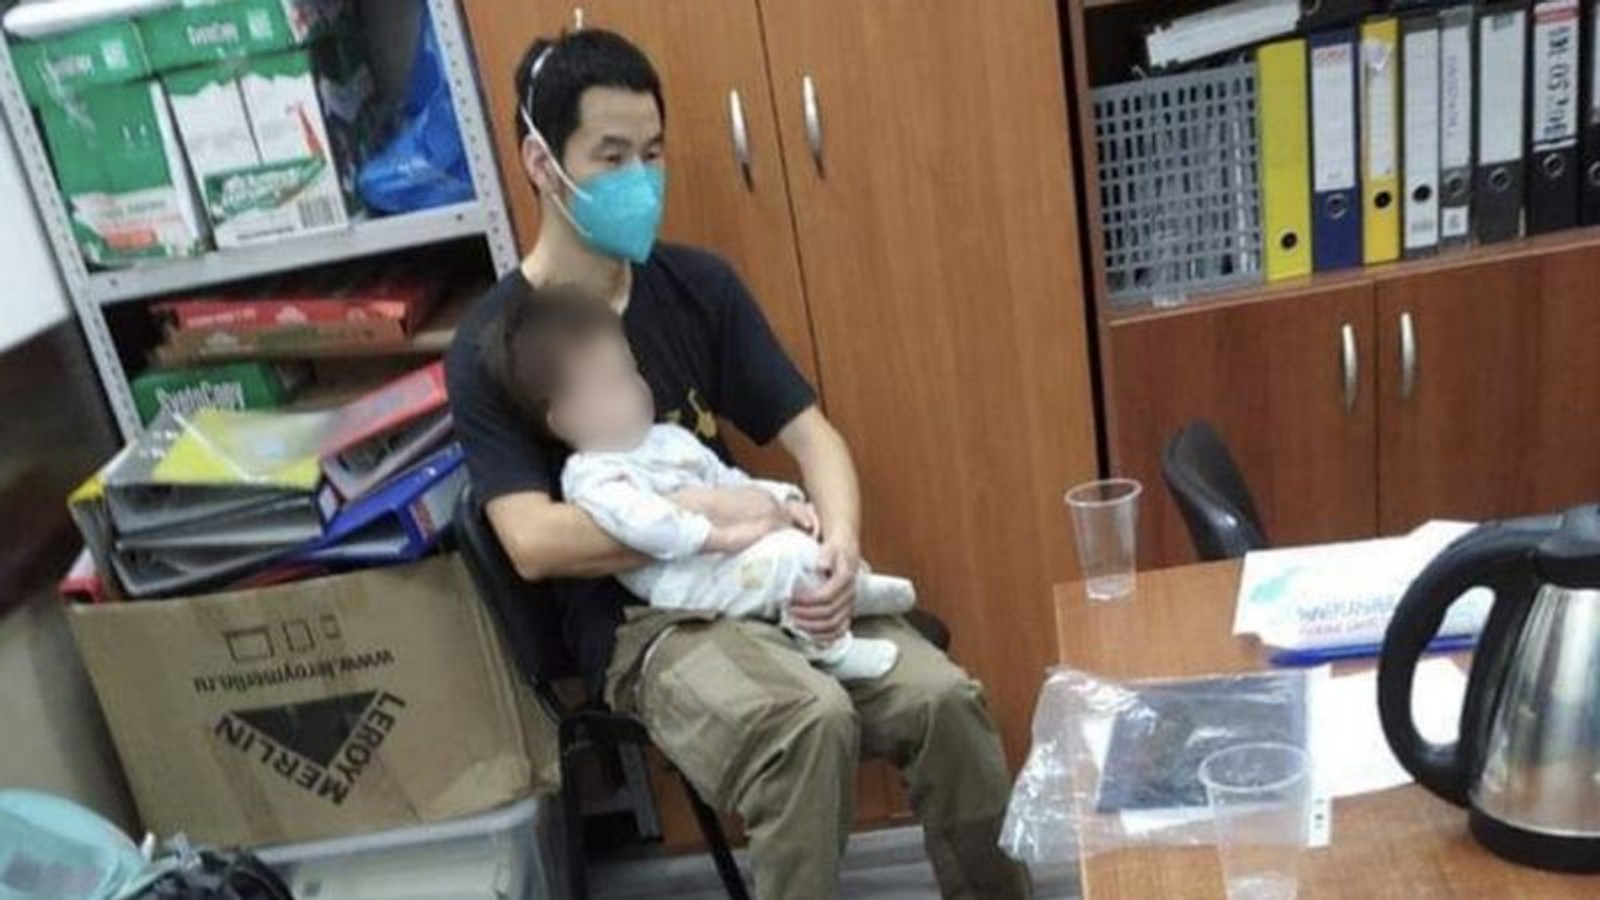 Громадянин Китаю, якого підозрювали в торгівлі людьми, зміг повернути свого сина, народженого від сурогатної матері - адвокат